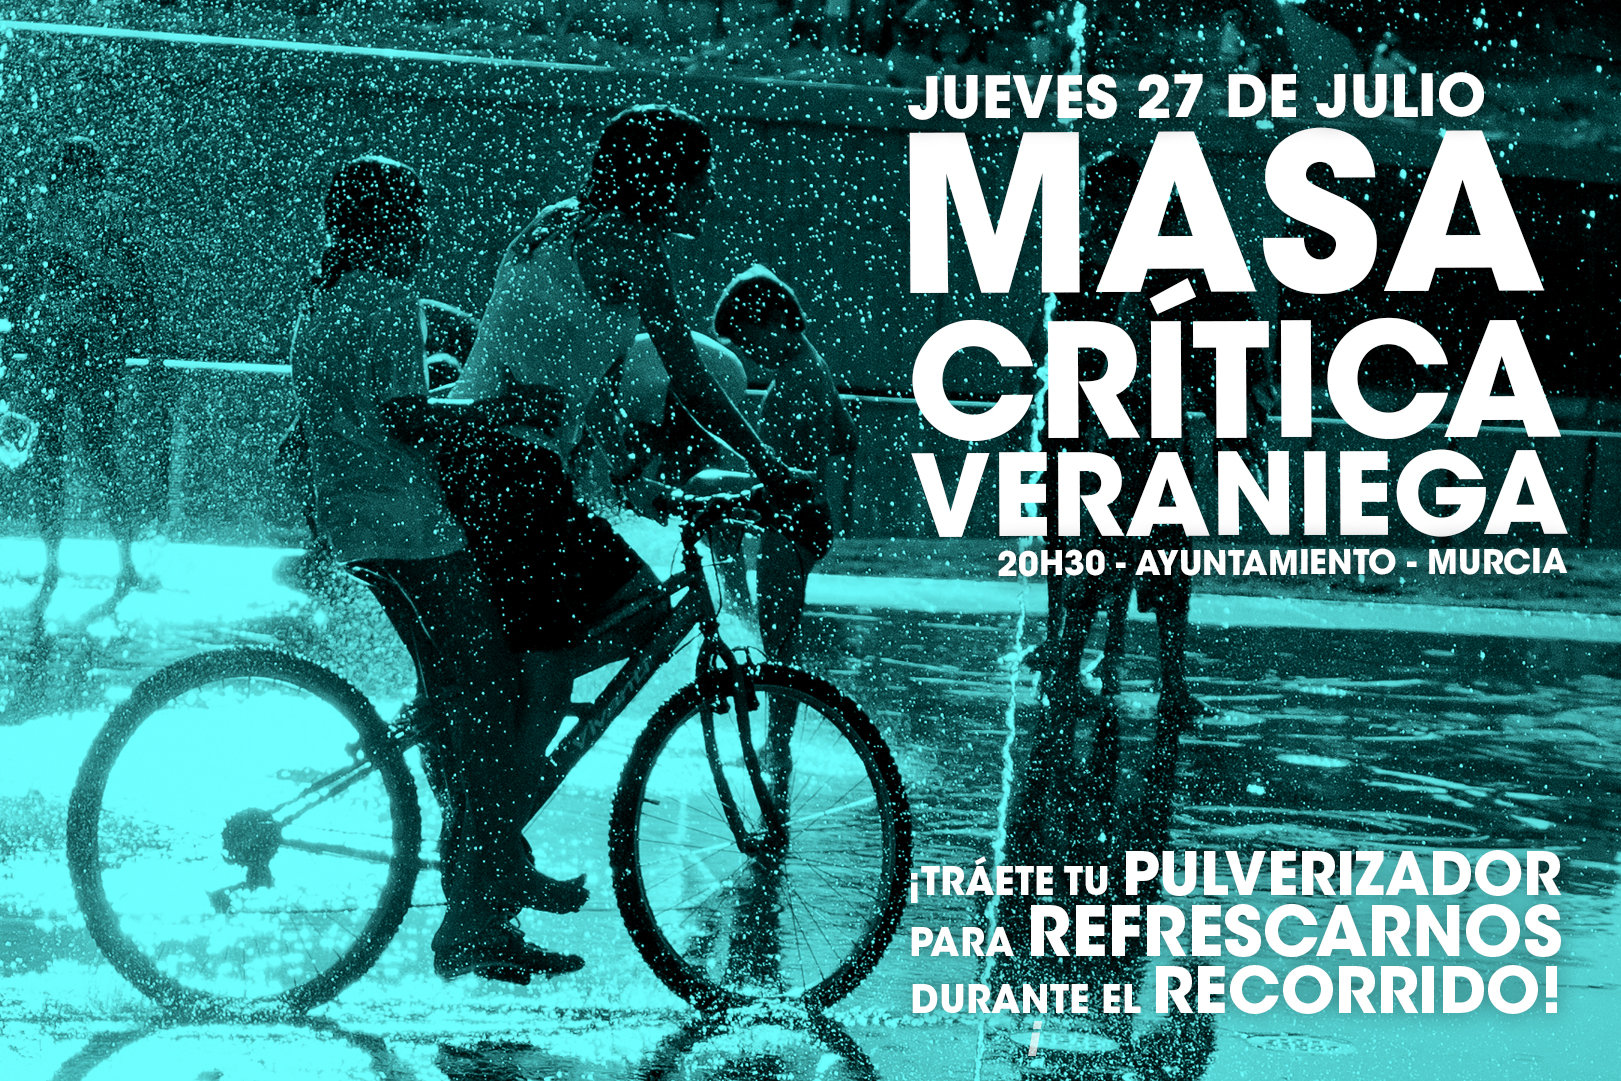 Masa Crítica ciclista veraniega, con Masa Crítica de Murcia